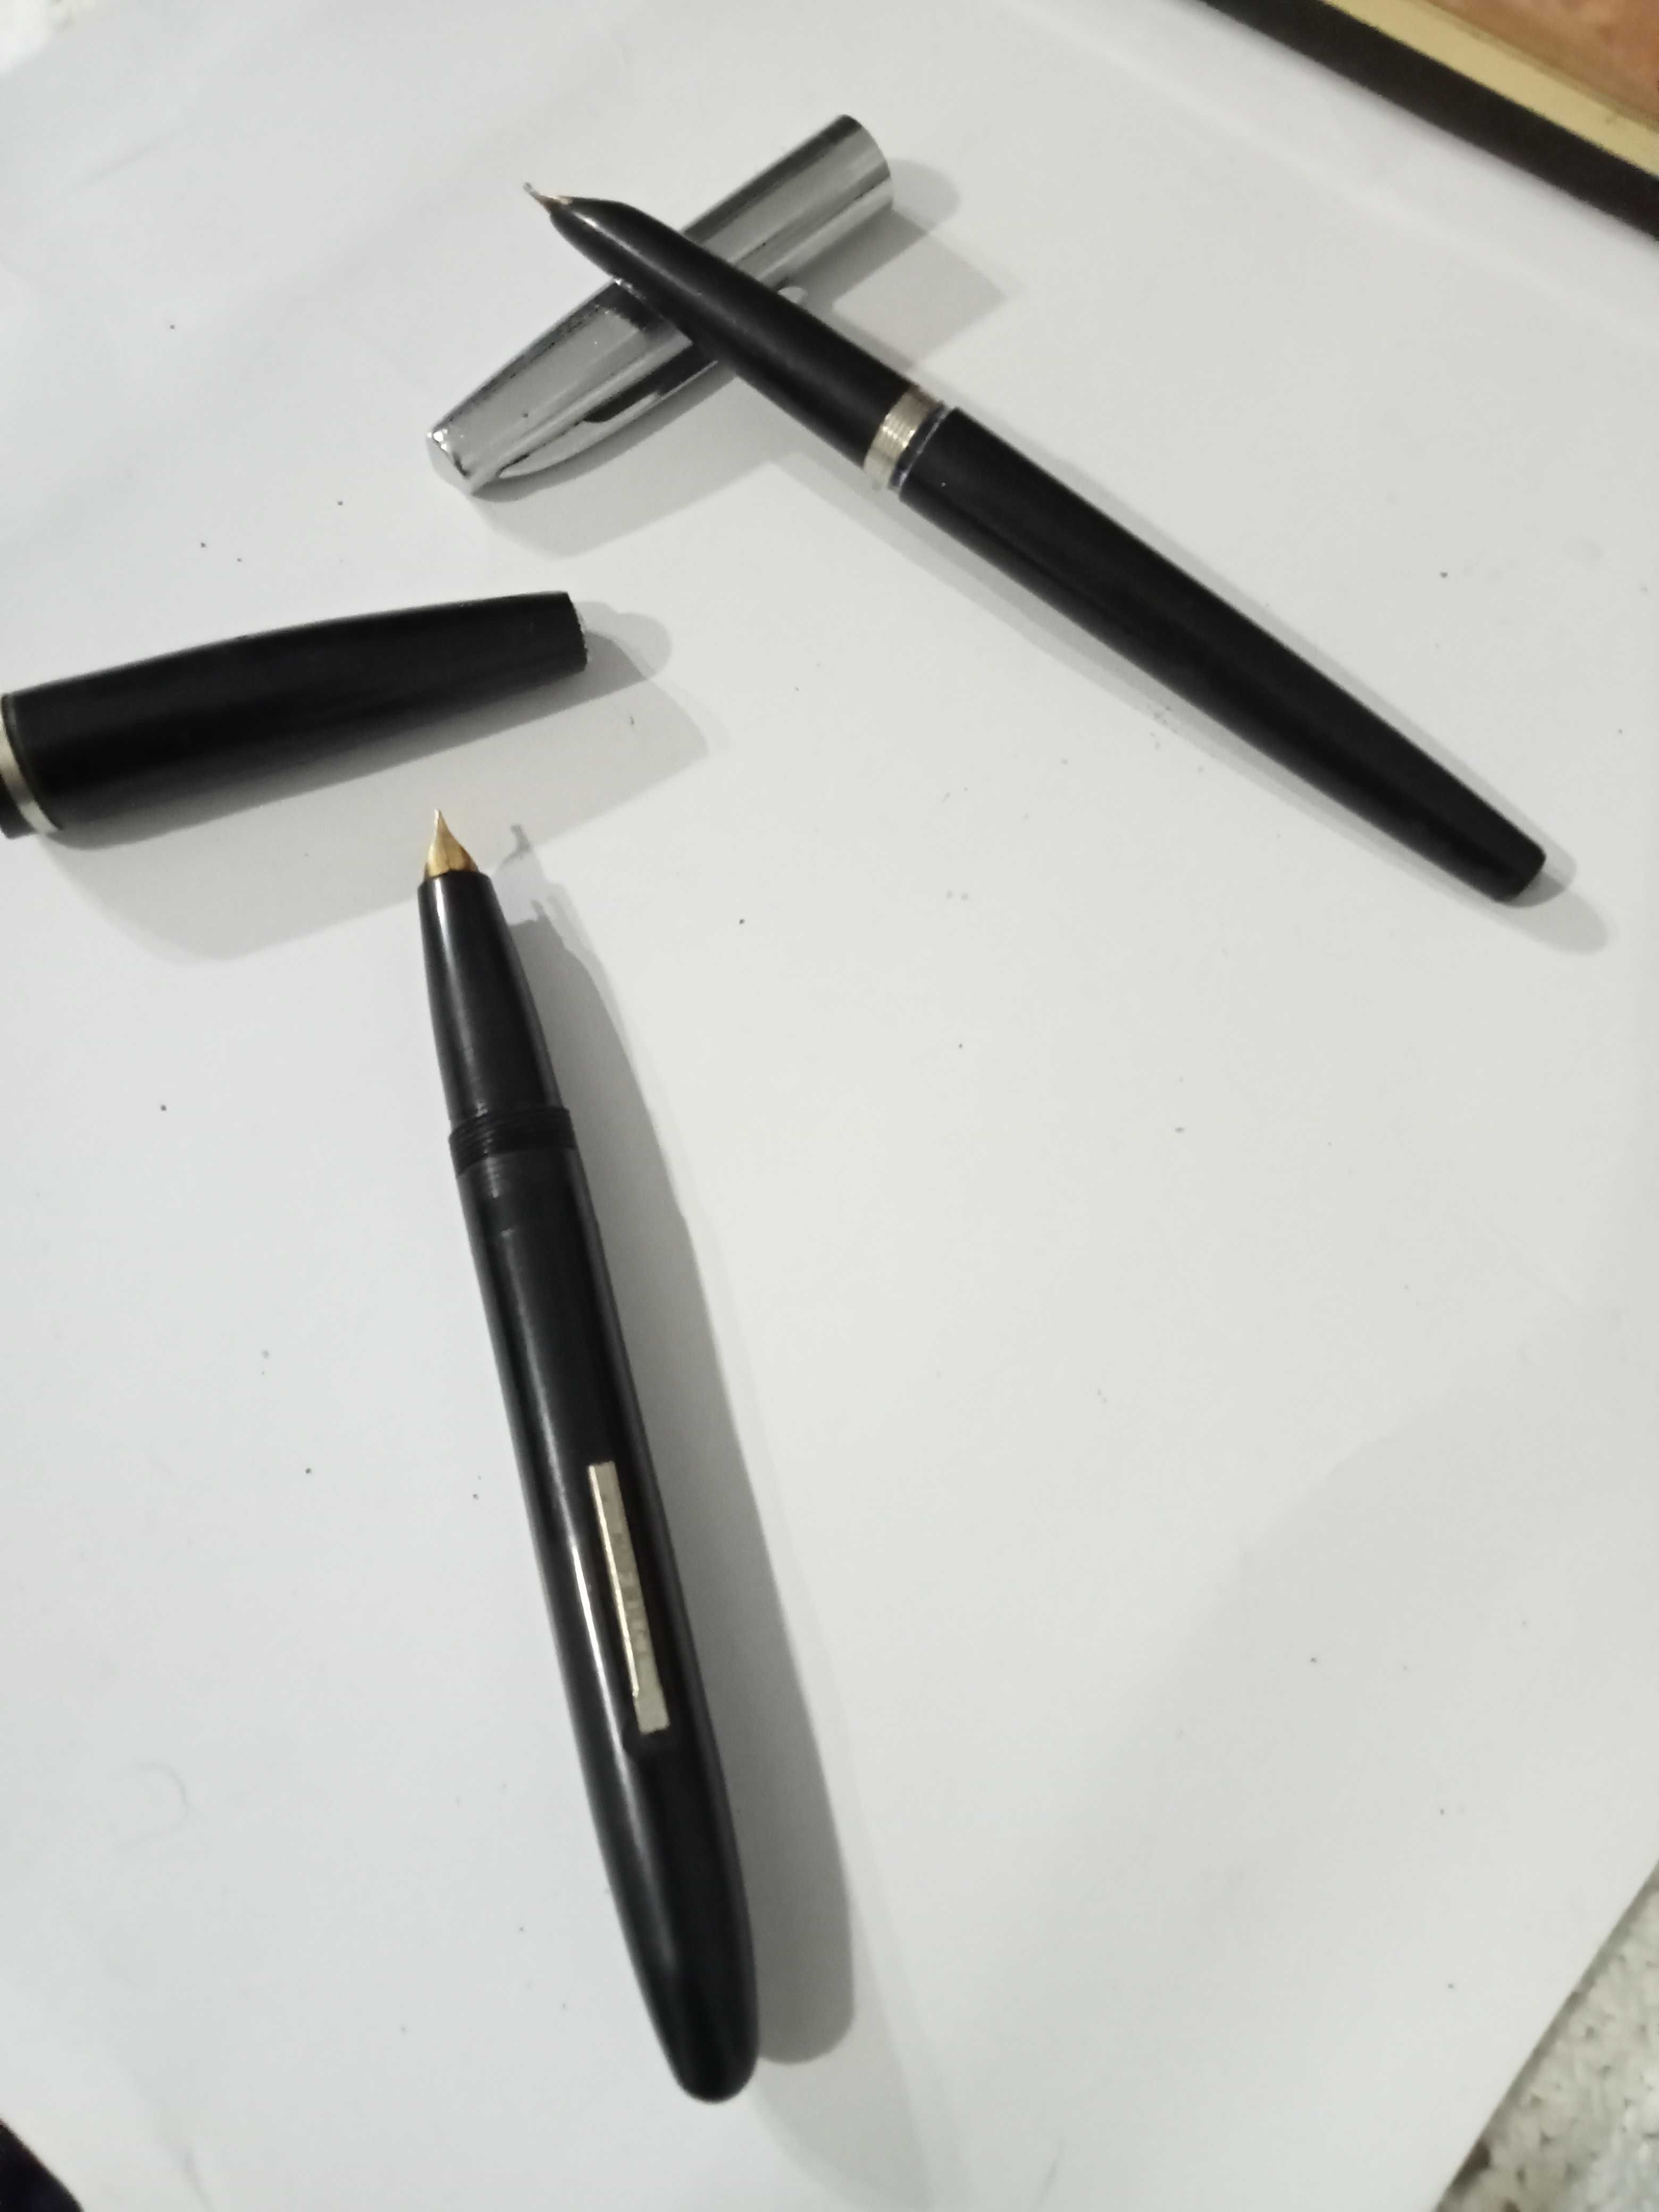 CANETAS-2 canetas tinta permanente antigas